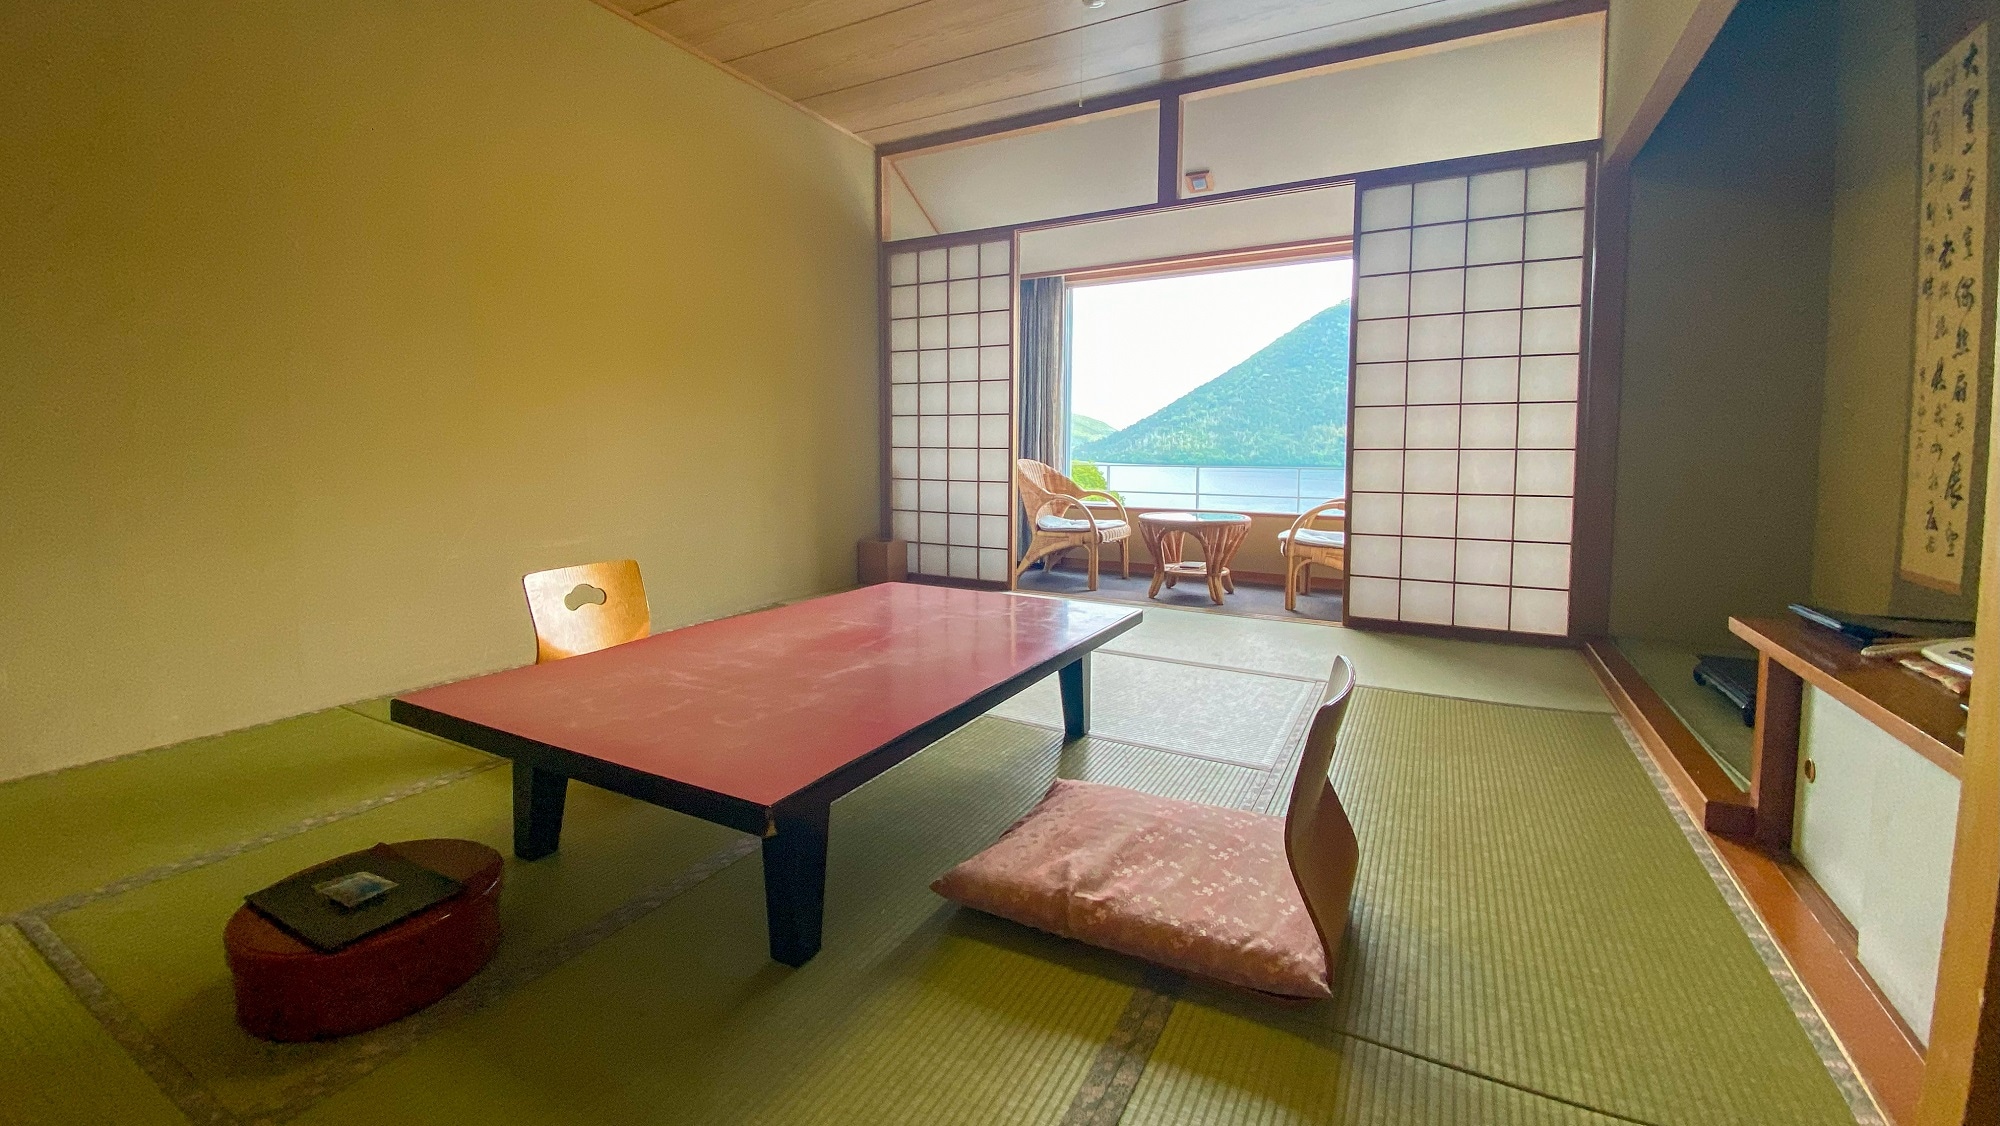 Kamar bergaya Jepang 10 tatami (contoh kamar tamu) yang dapat menampung hingga 5 orang.